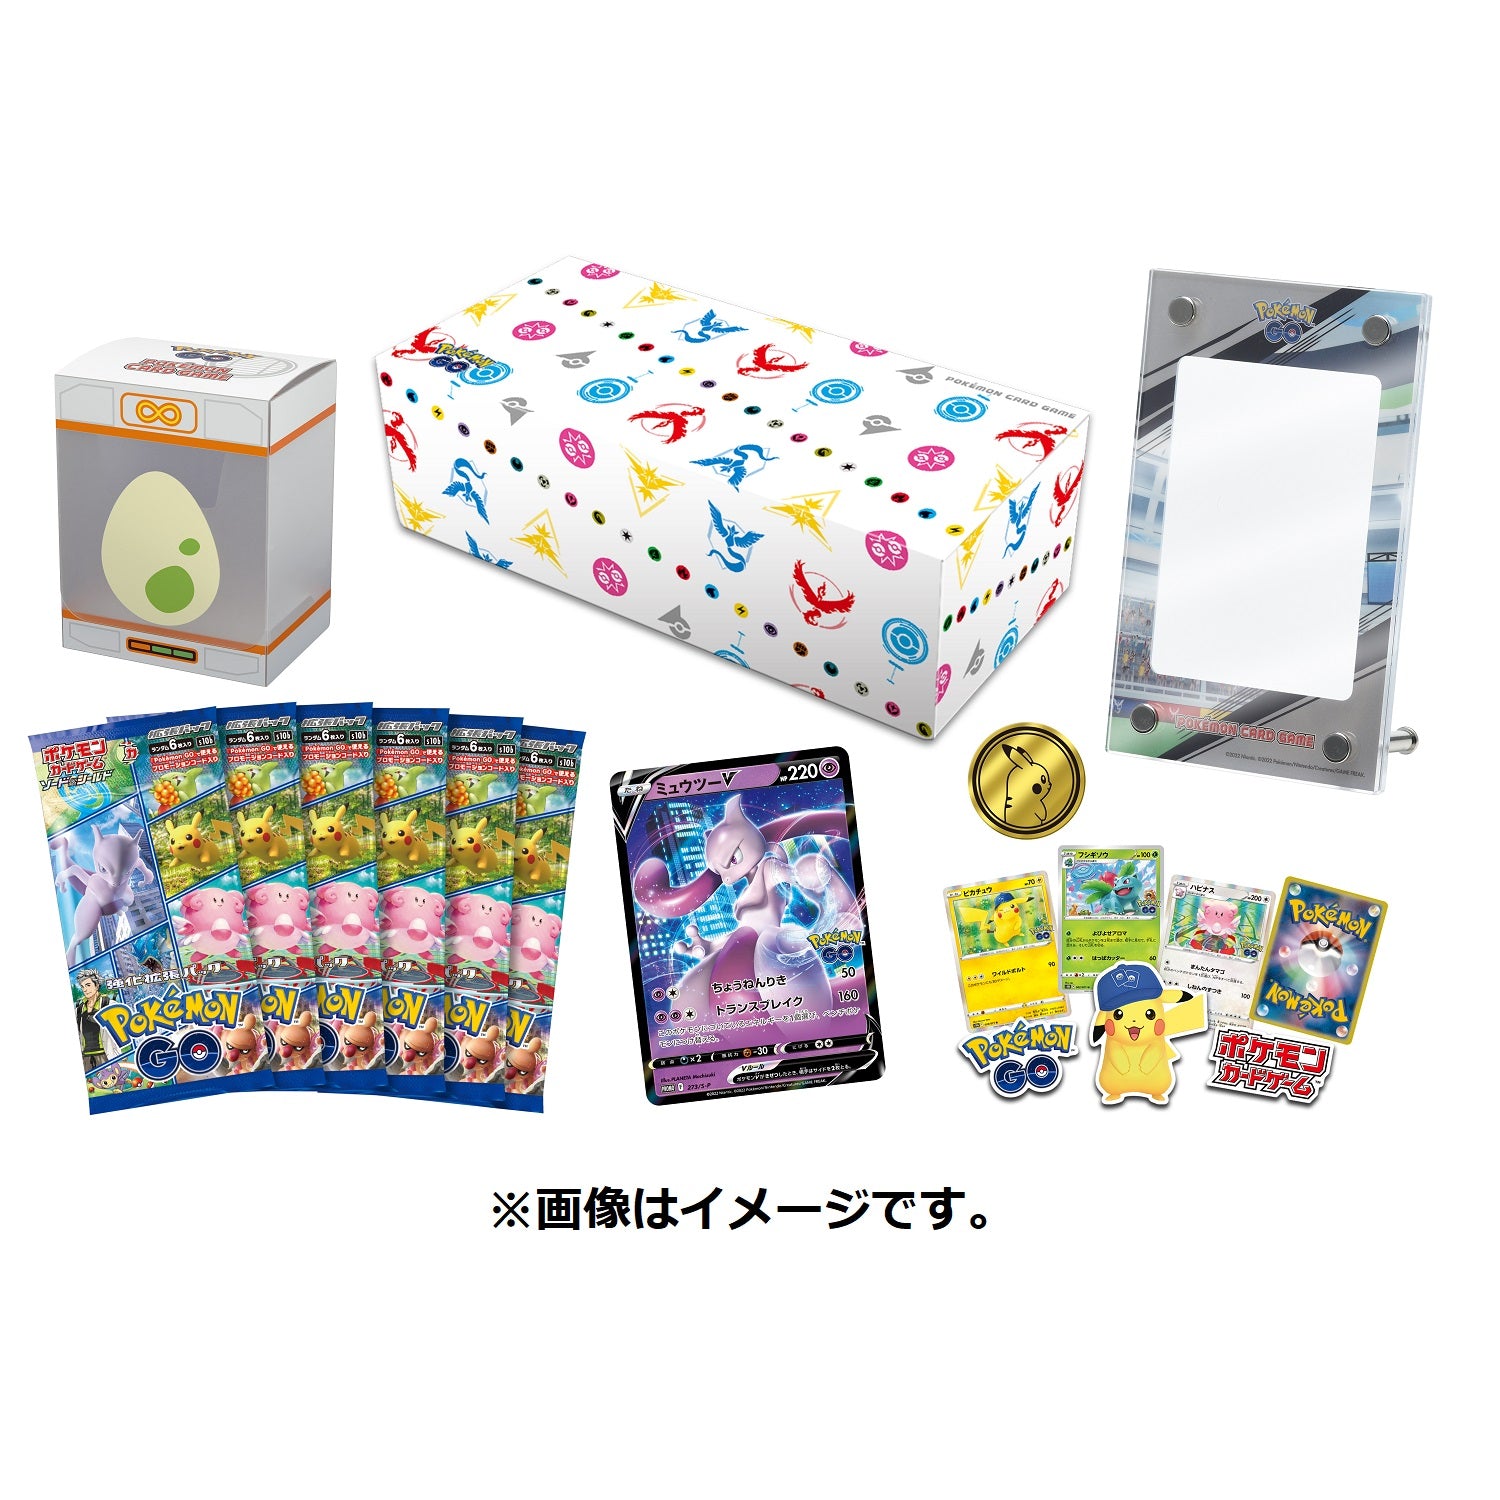 Display Pokémon GO s10b - Boite de 20 boosters japonais